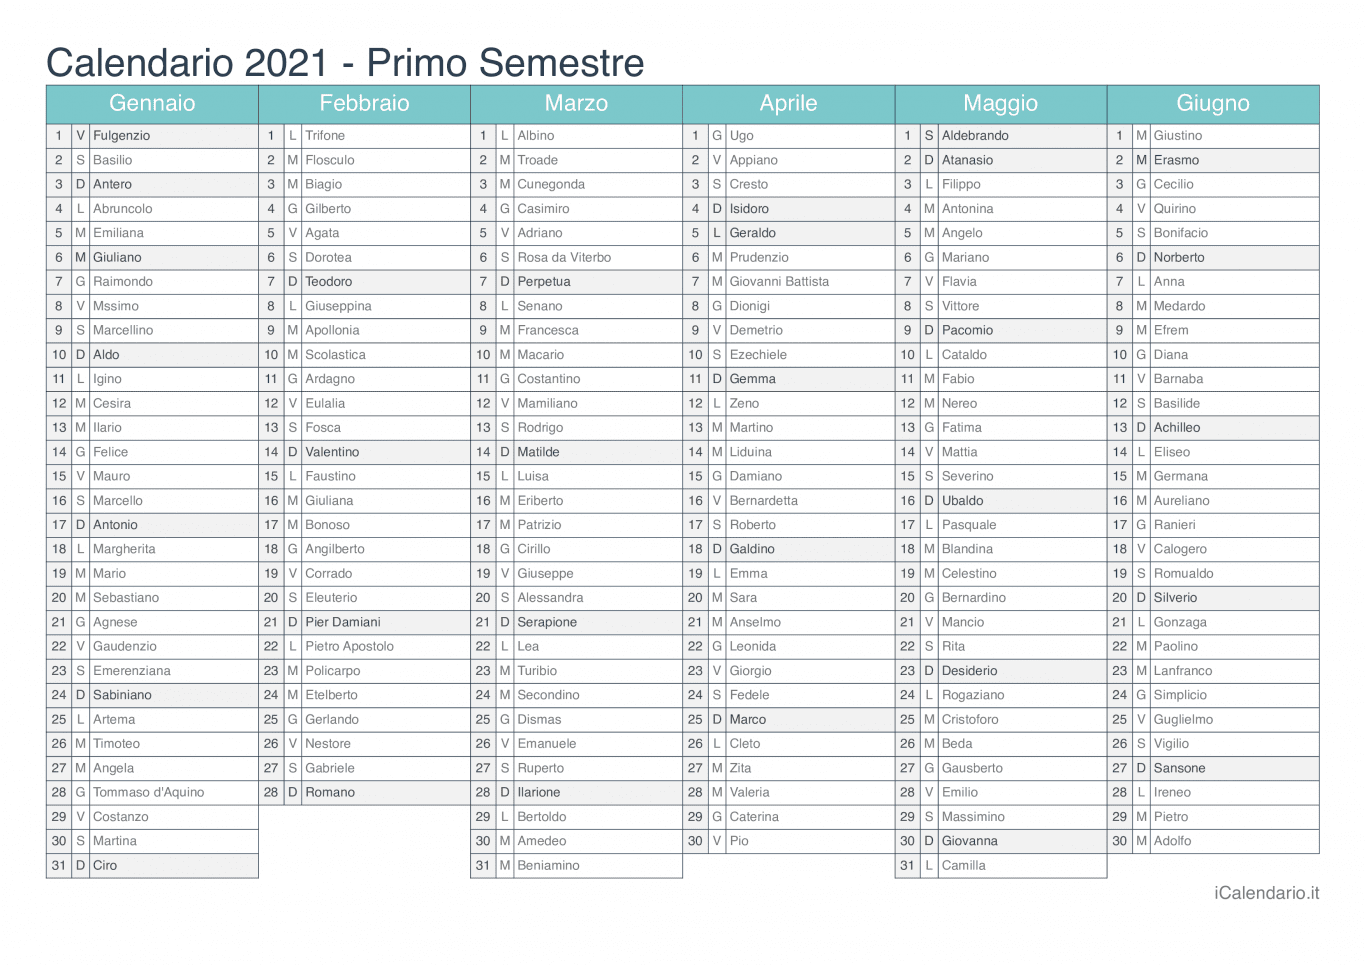 Calendario semestrale 2021 con santi e festivi - Turchese